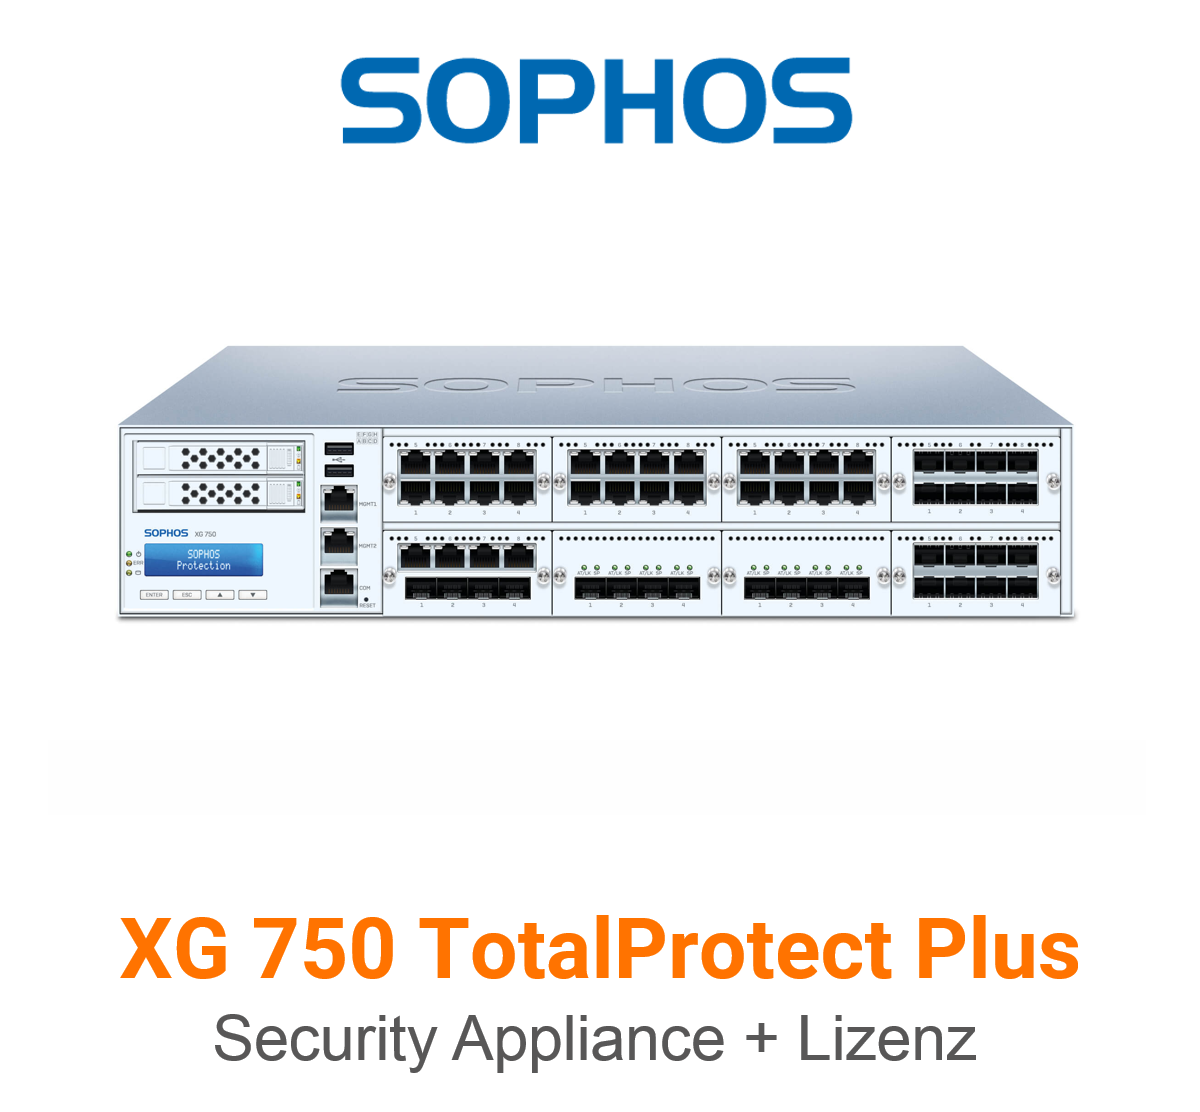 Sophos XG 750 TotalProtect Plus Bundle (Hardware + Lizenz)